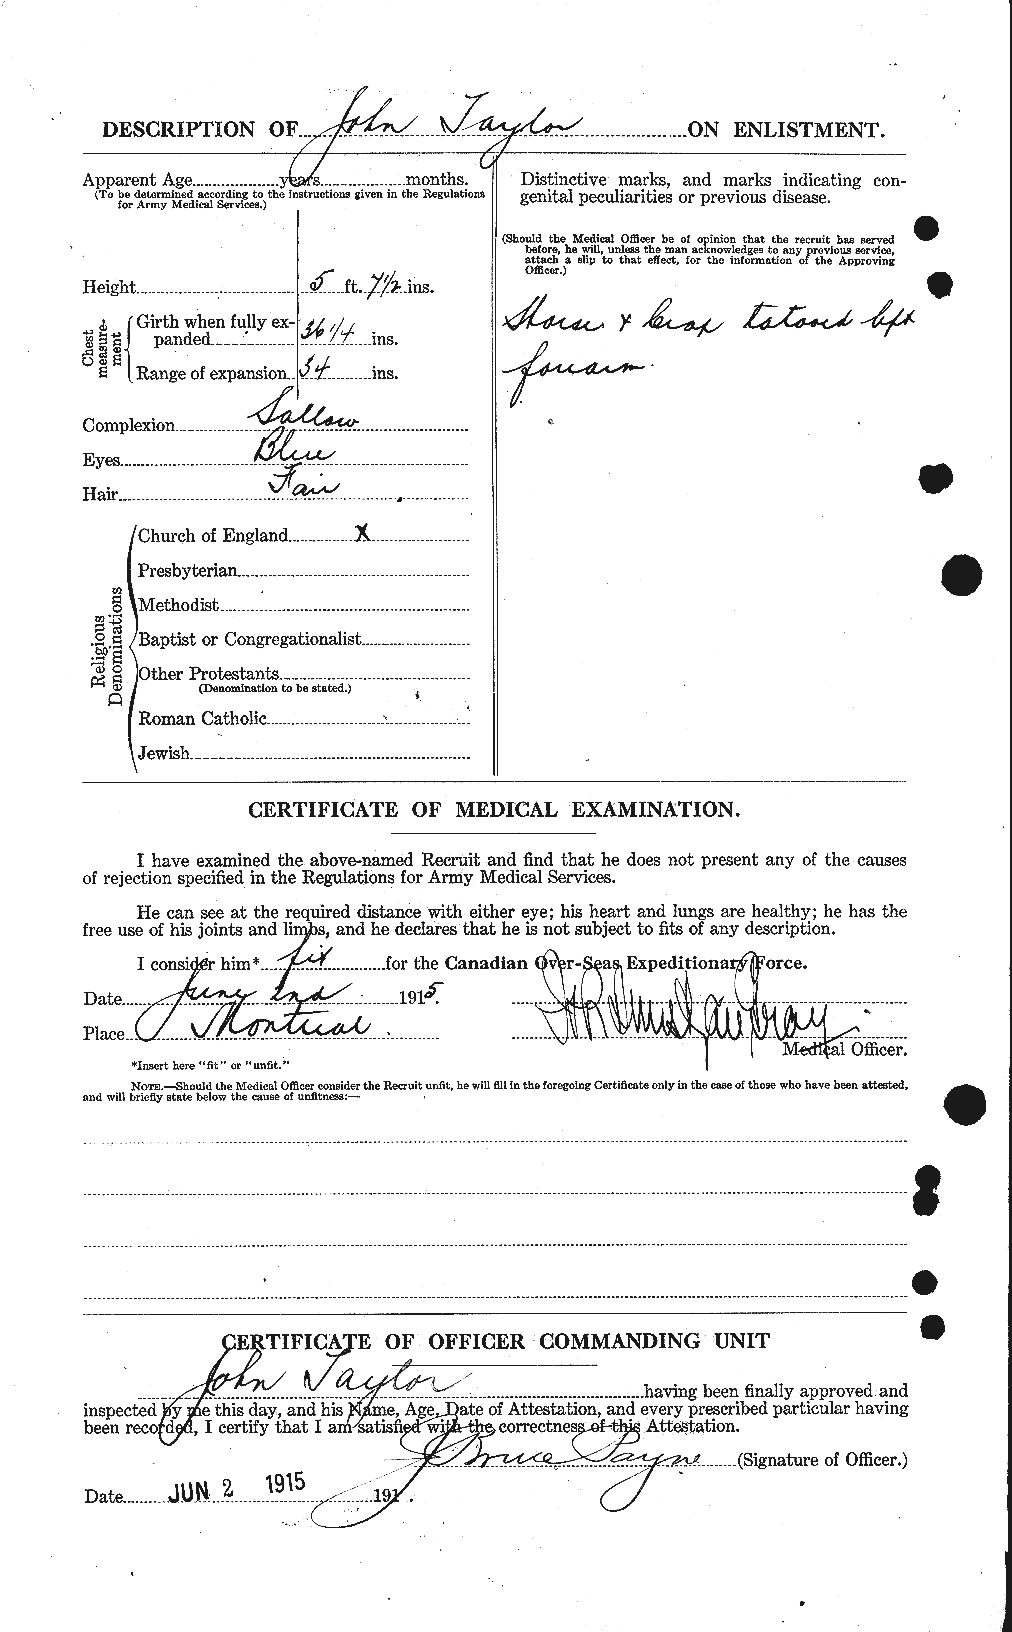 Dossiers du Personnel de la Première Guerre mondiale - CEC 627023b